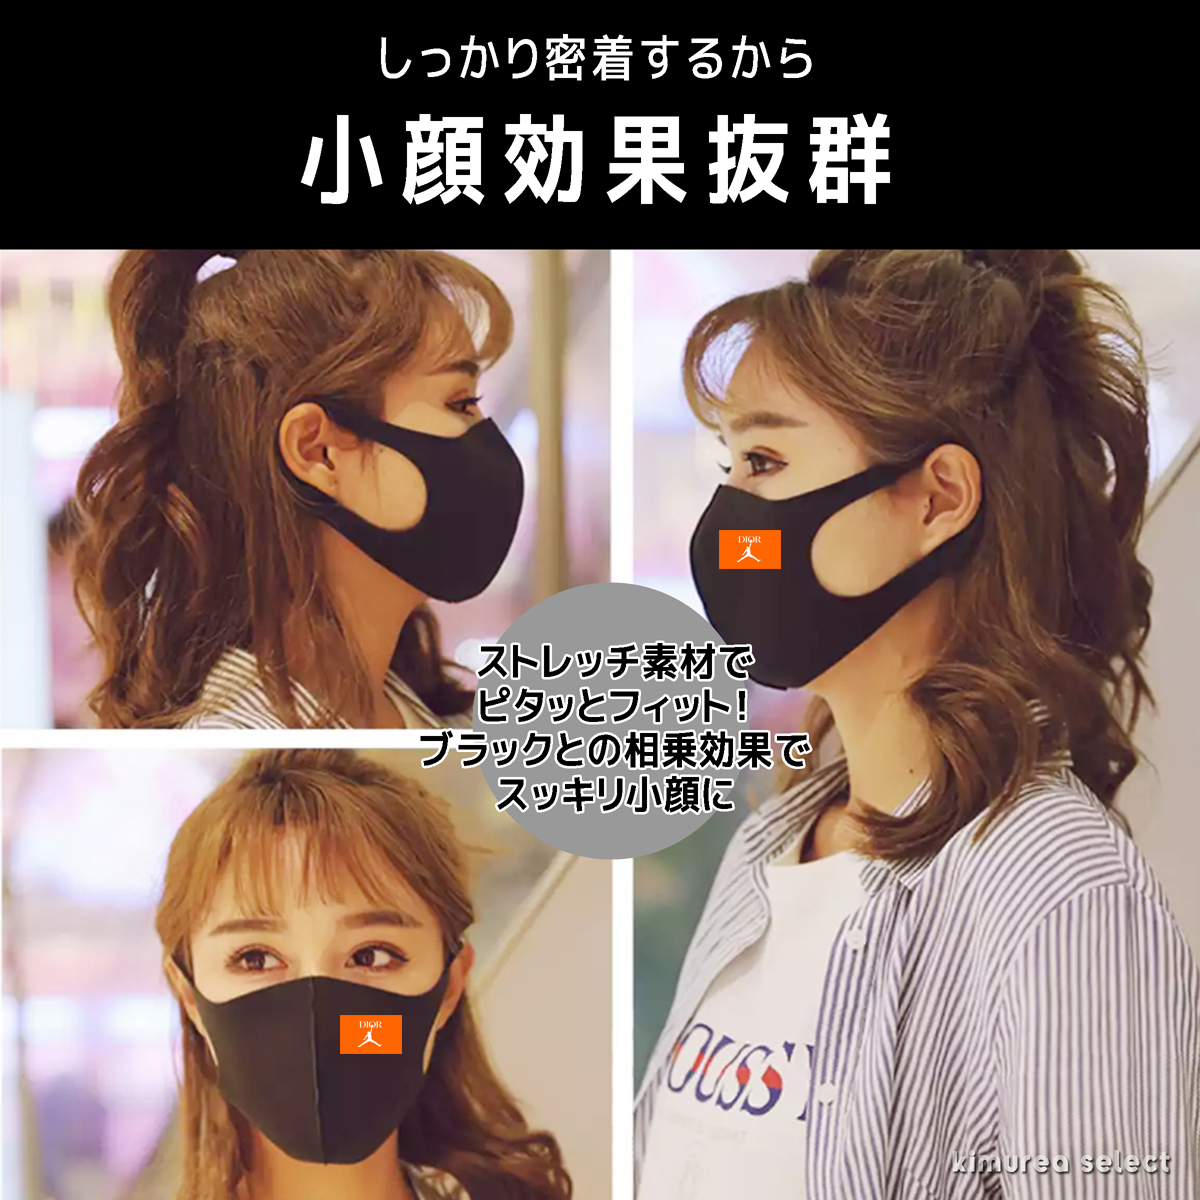 ブランドパロディUVカット3D立体マスク